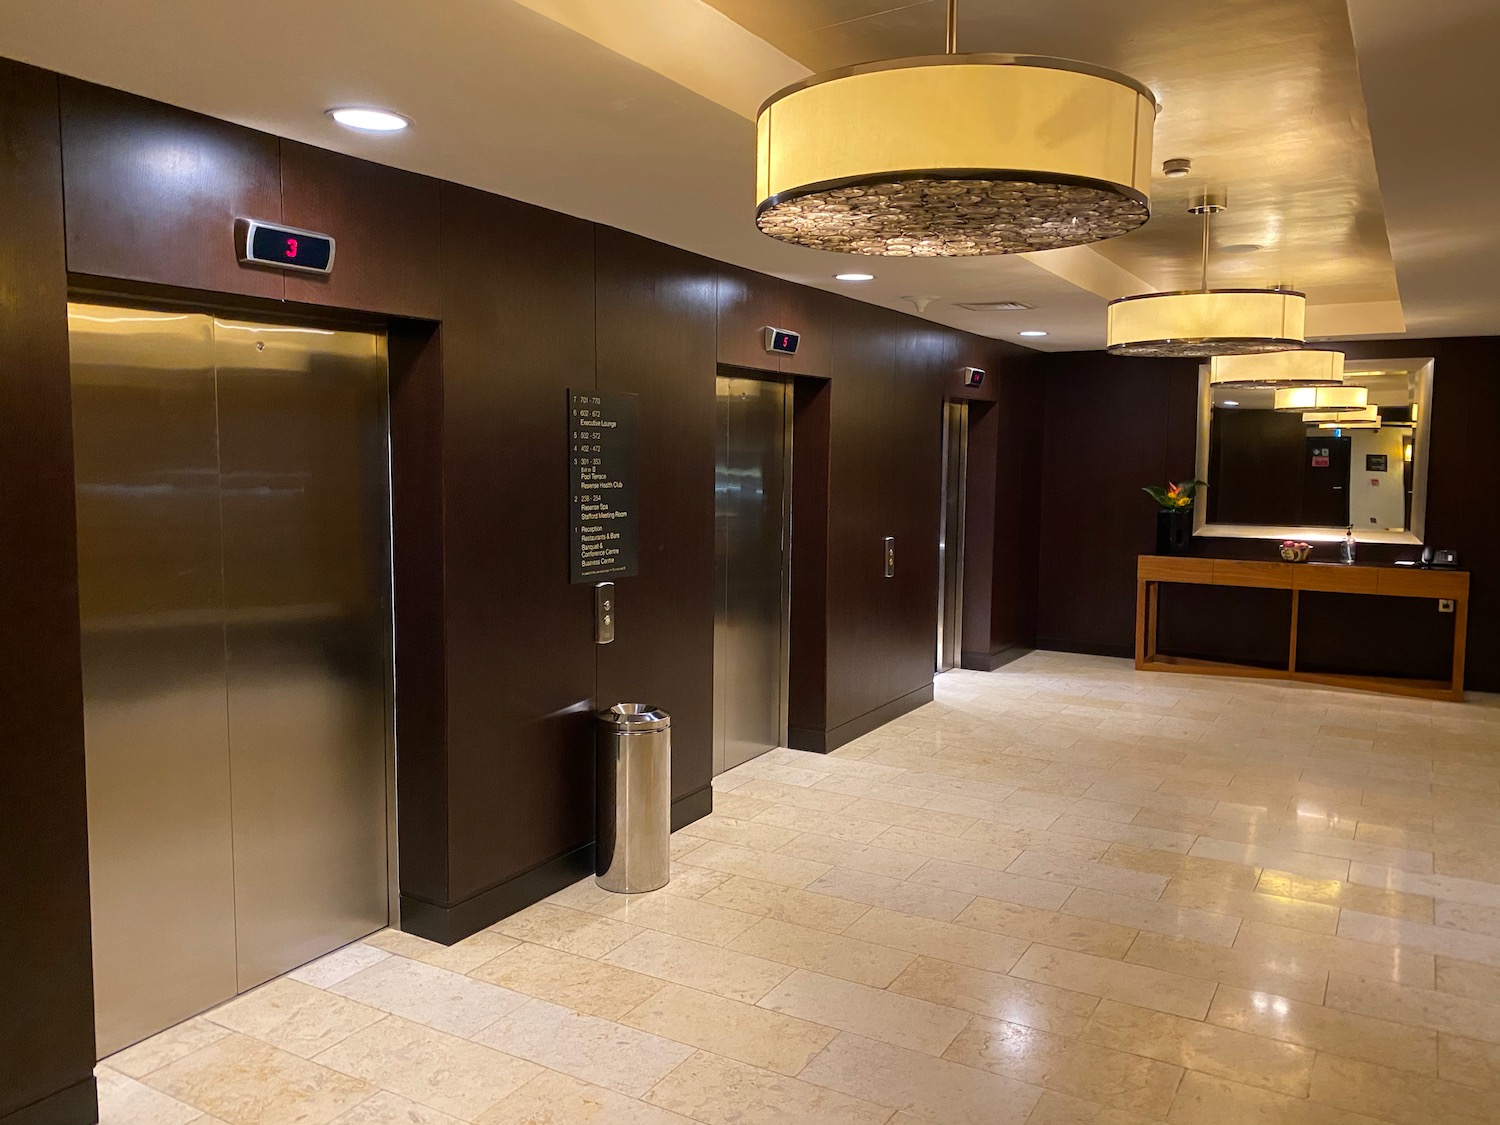 elevator doors in a building